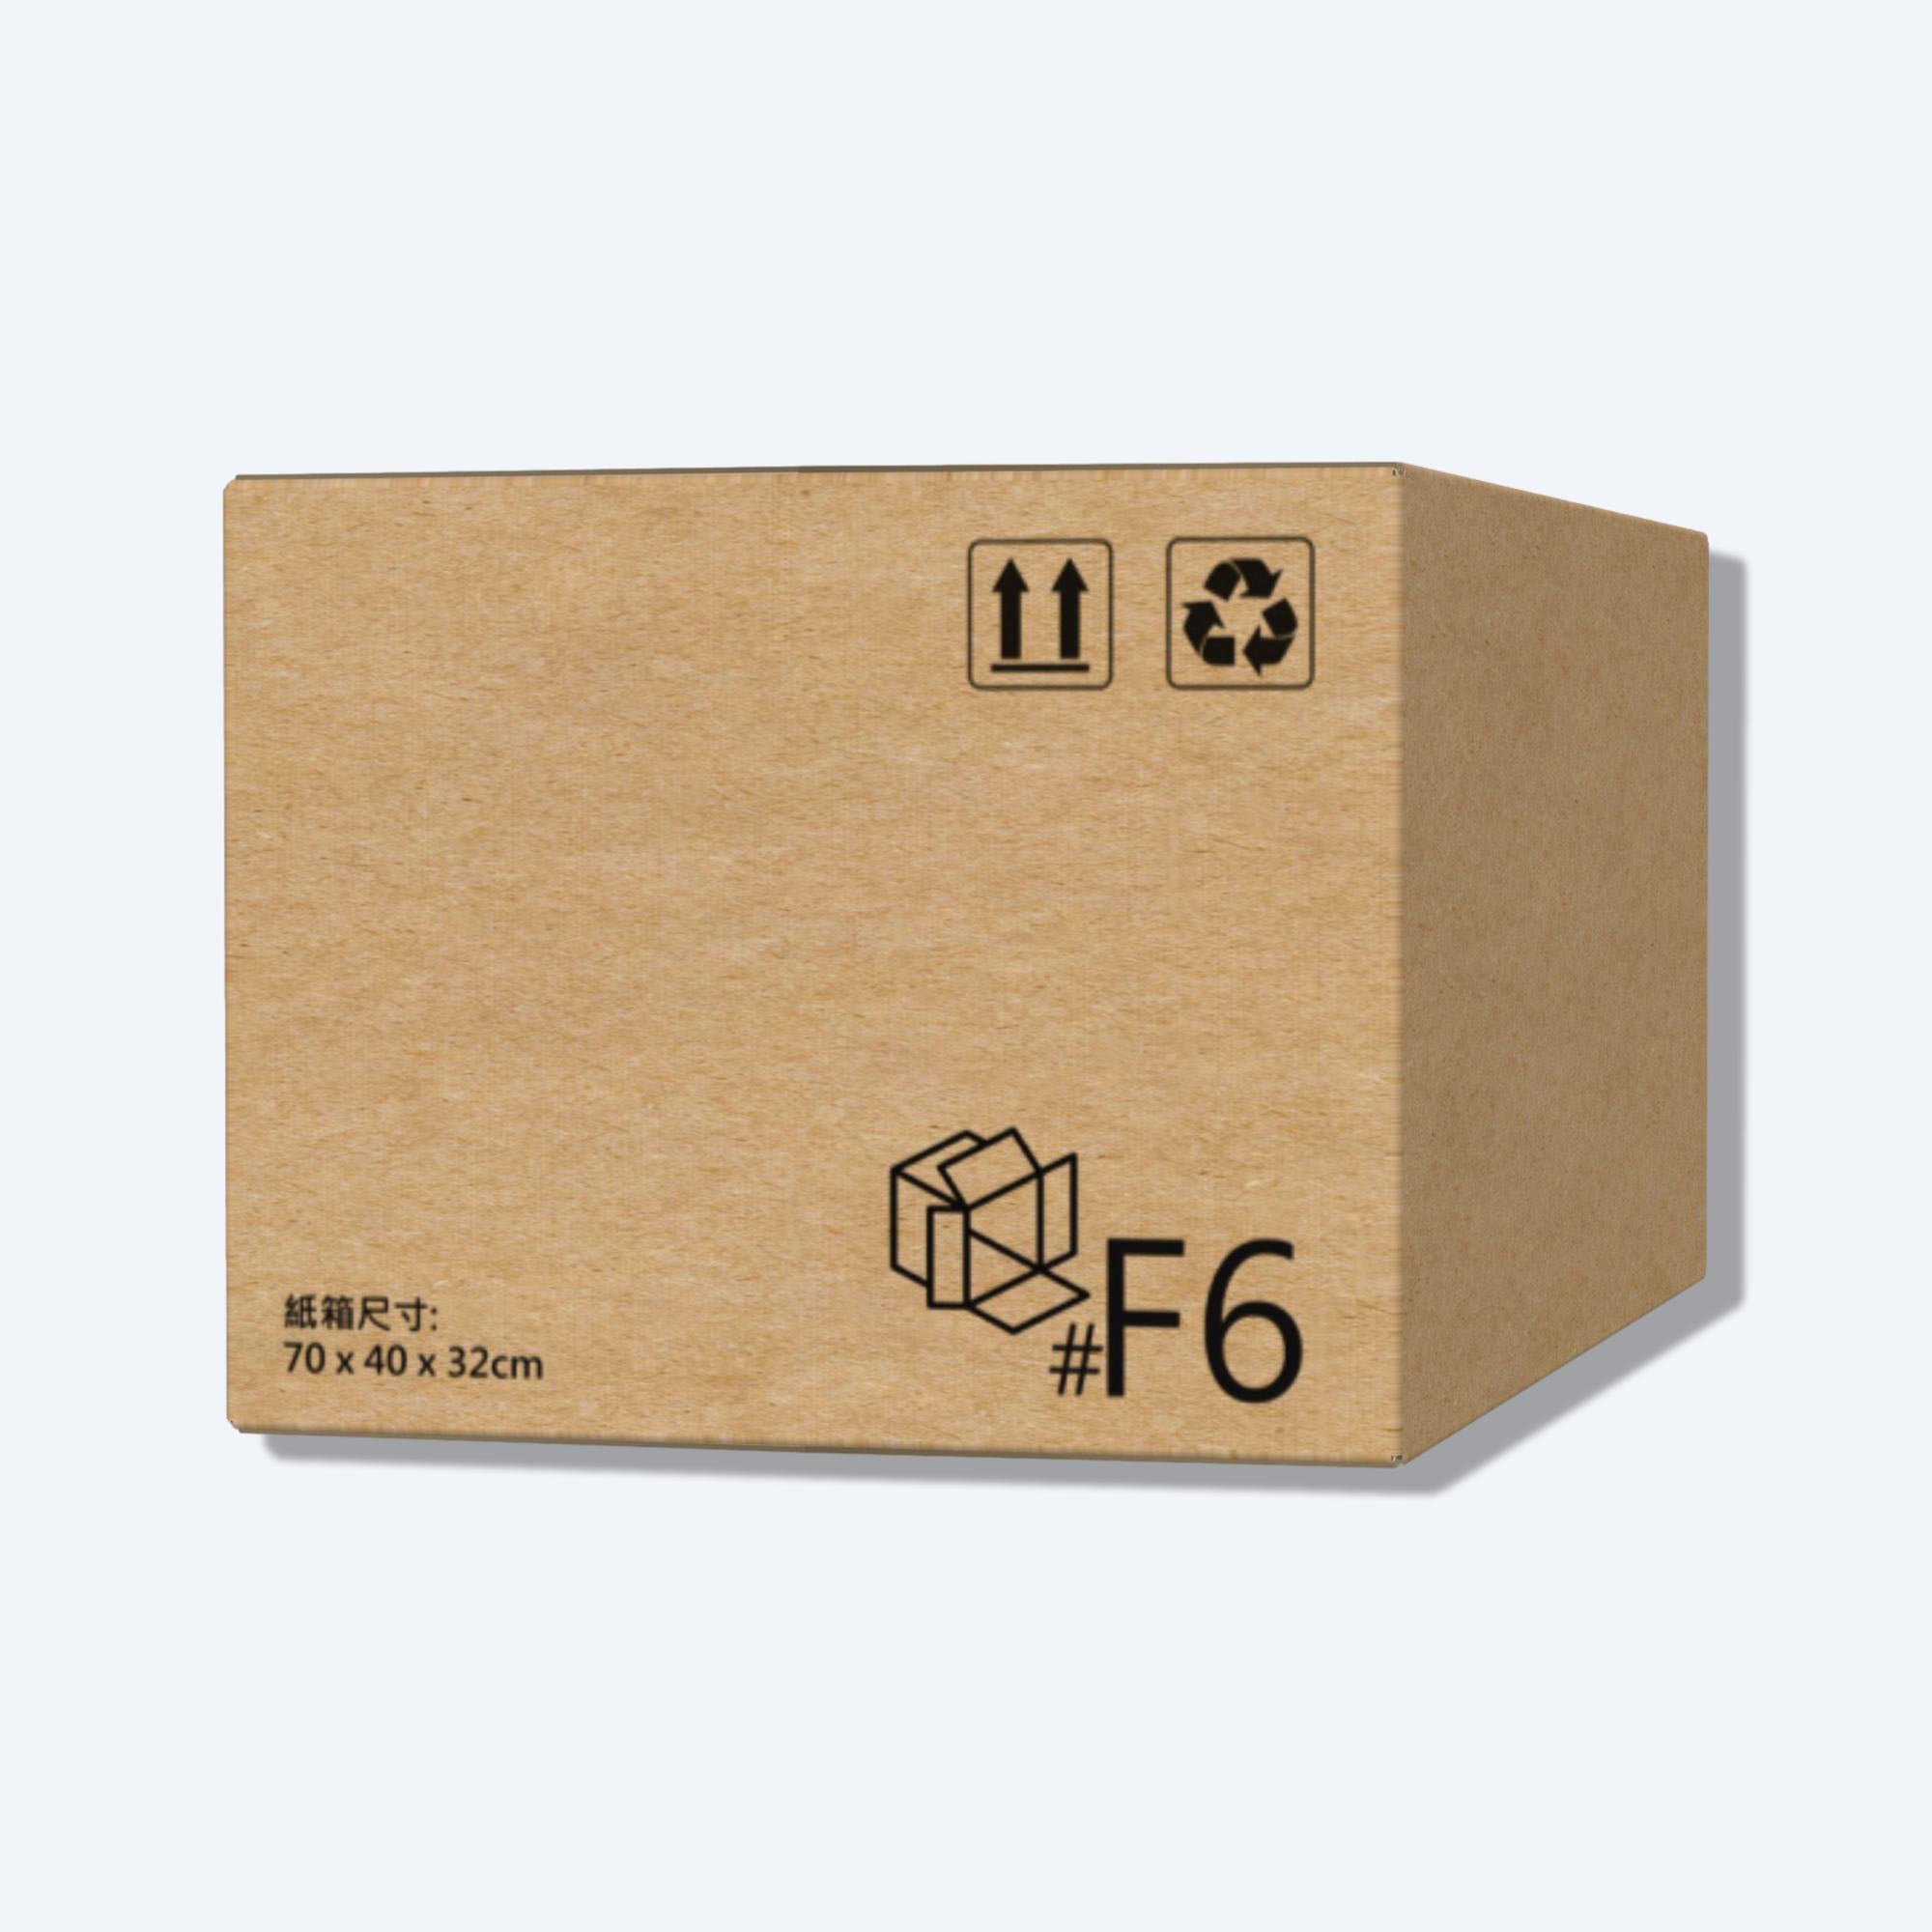 堅固的啡色順豐速運F6尺寸紙箱正面圖，這款快遞紙箱專為順豐速運設計。